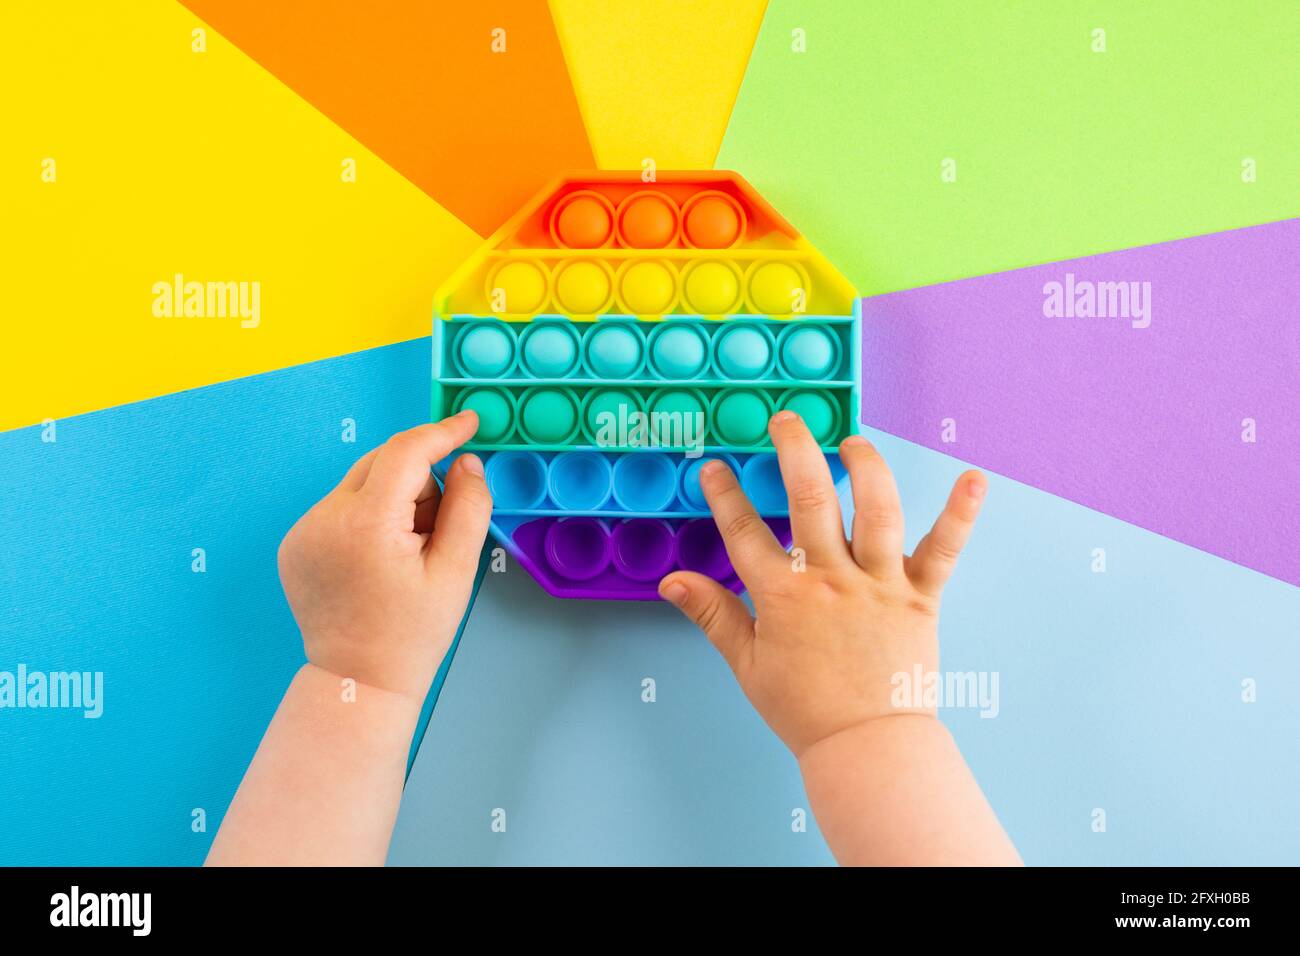 Kinder Hände schieben sensorische popit auf bunten Hintergrund. Antistress-Pop-it-Spielzeug. Rainbow Silikon sensorische Fidget Neue beliebte trendige Silikon-Spielzeug. Stockfoto